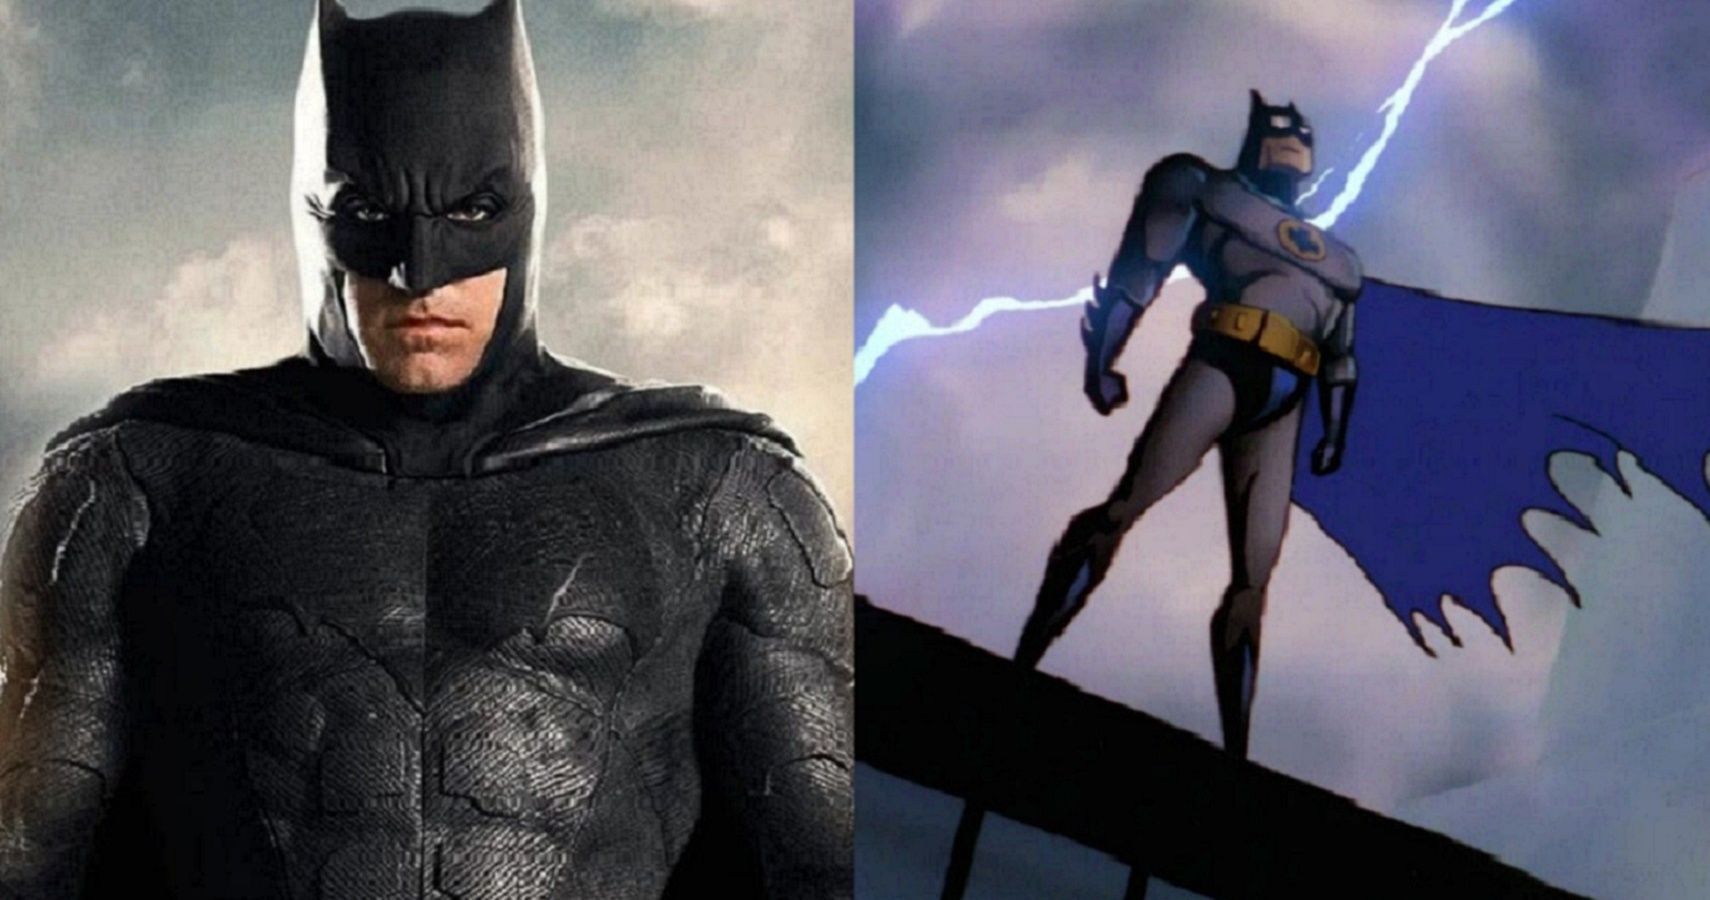 DCAU Batman Vs. DCEU Batman, Who Is Stronger?